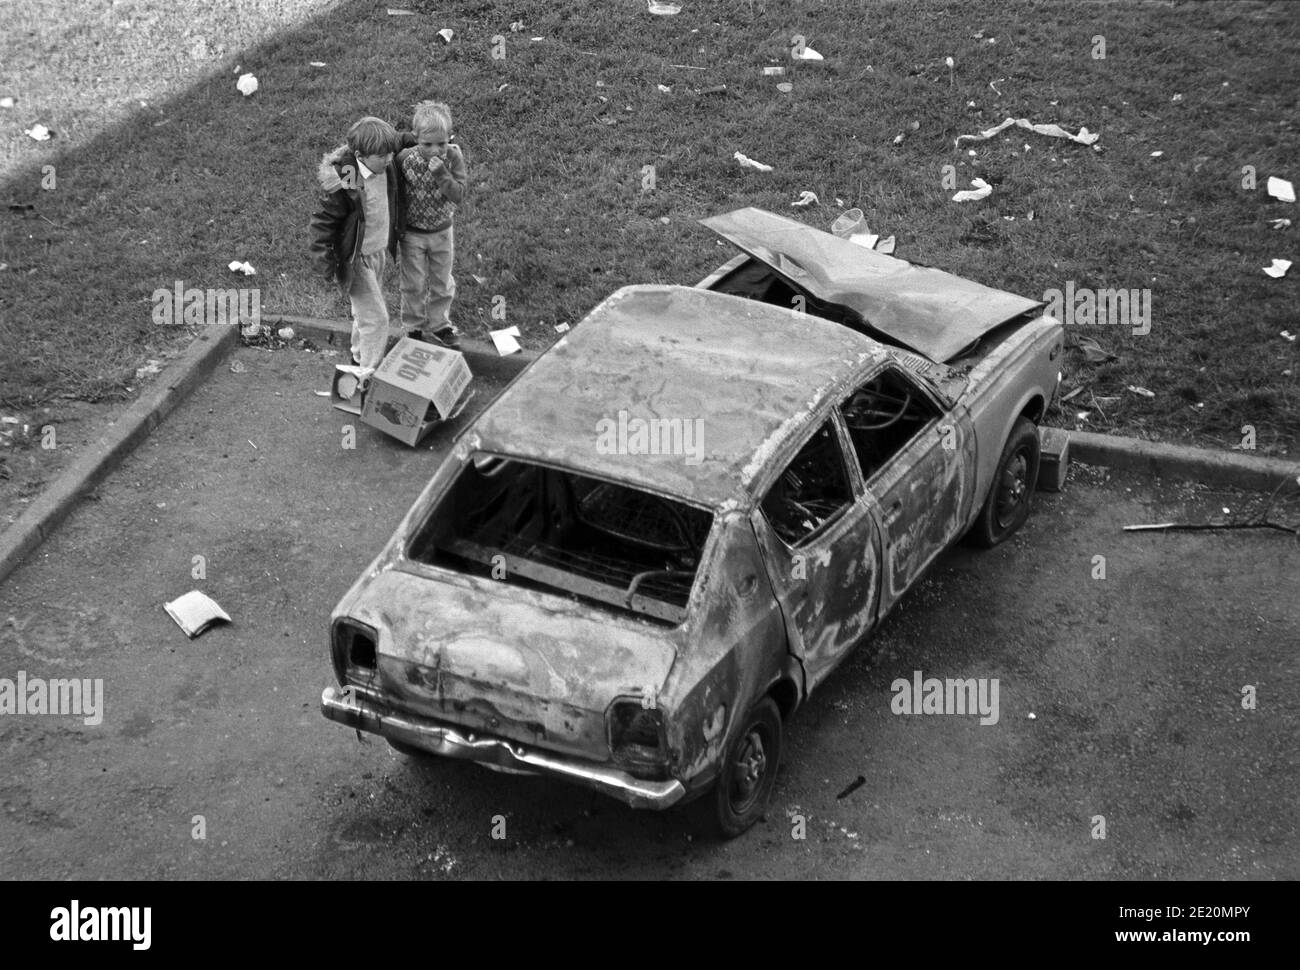 Kleine Kinder neben einem verbrannten Auto, September 1986, Ballymun, Dublin, Republik Irland Stockfoto